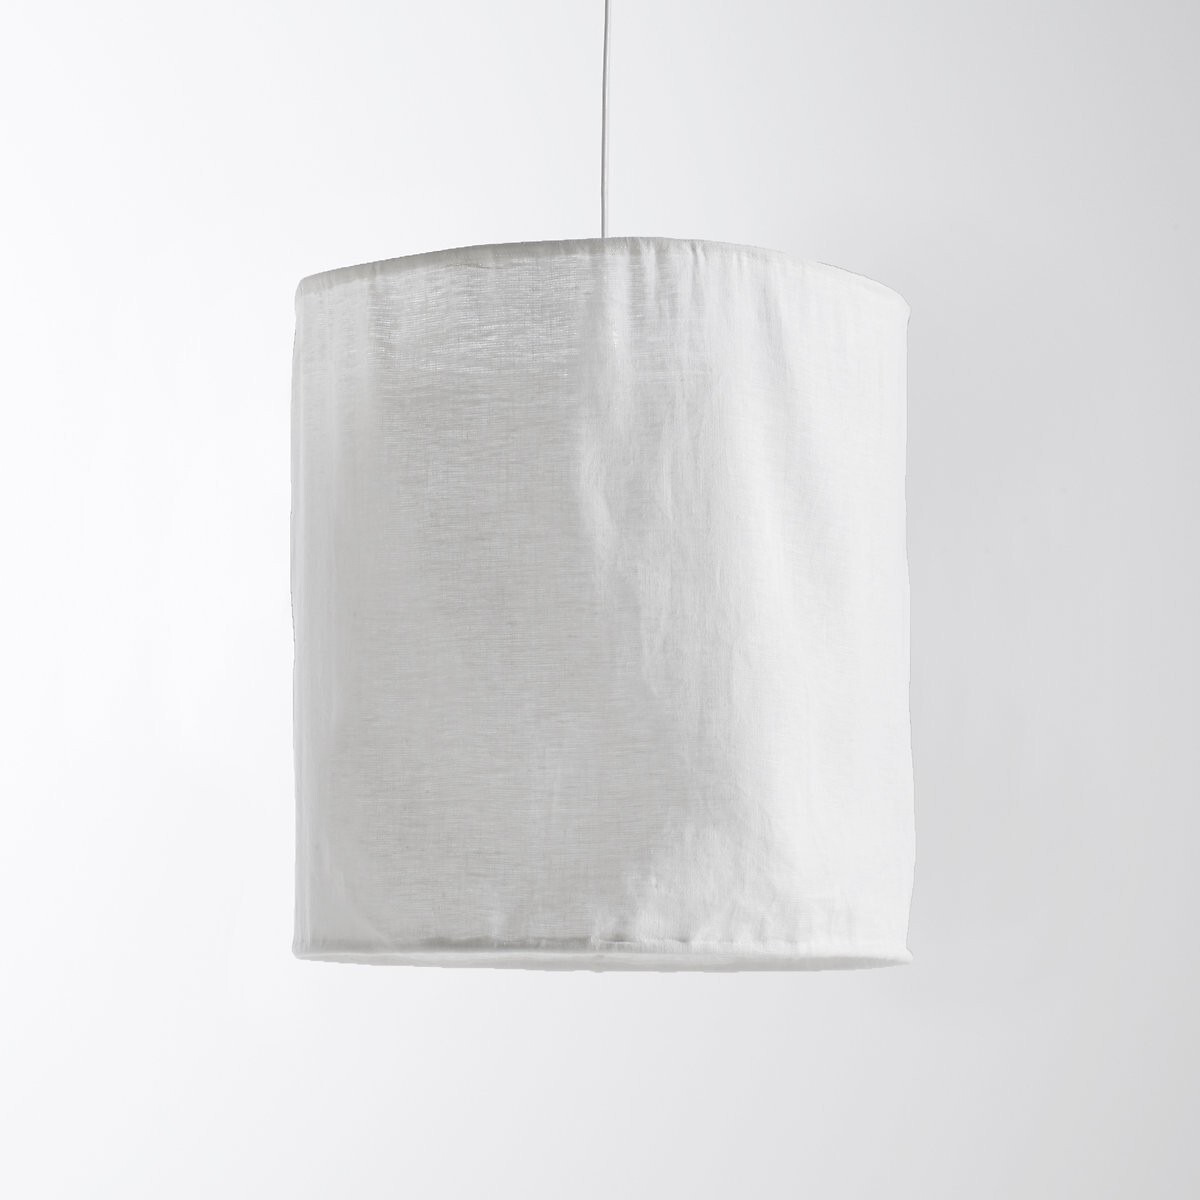 Thad 30cm Diameter Textured Linen Ceiling Lampshade - image 1